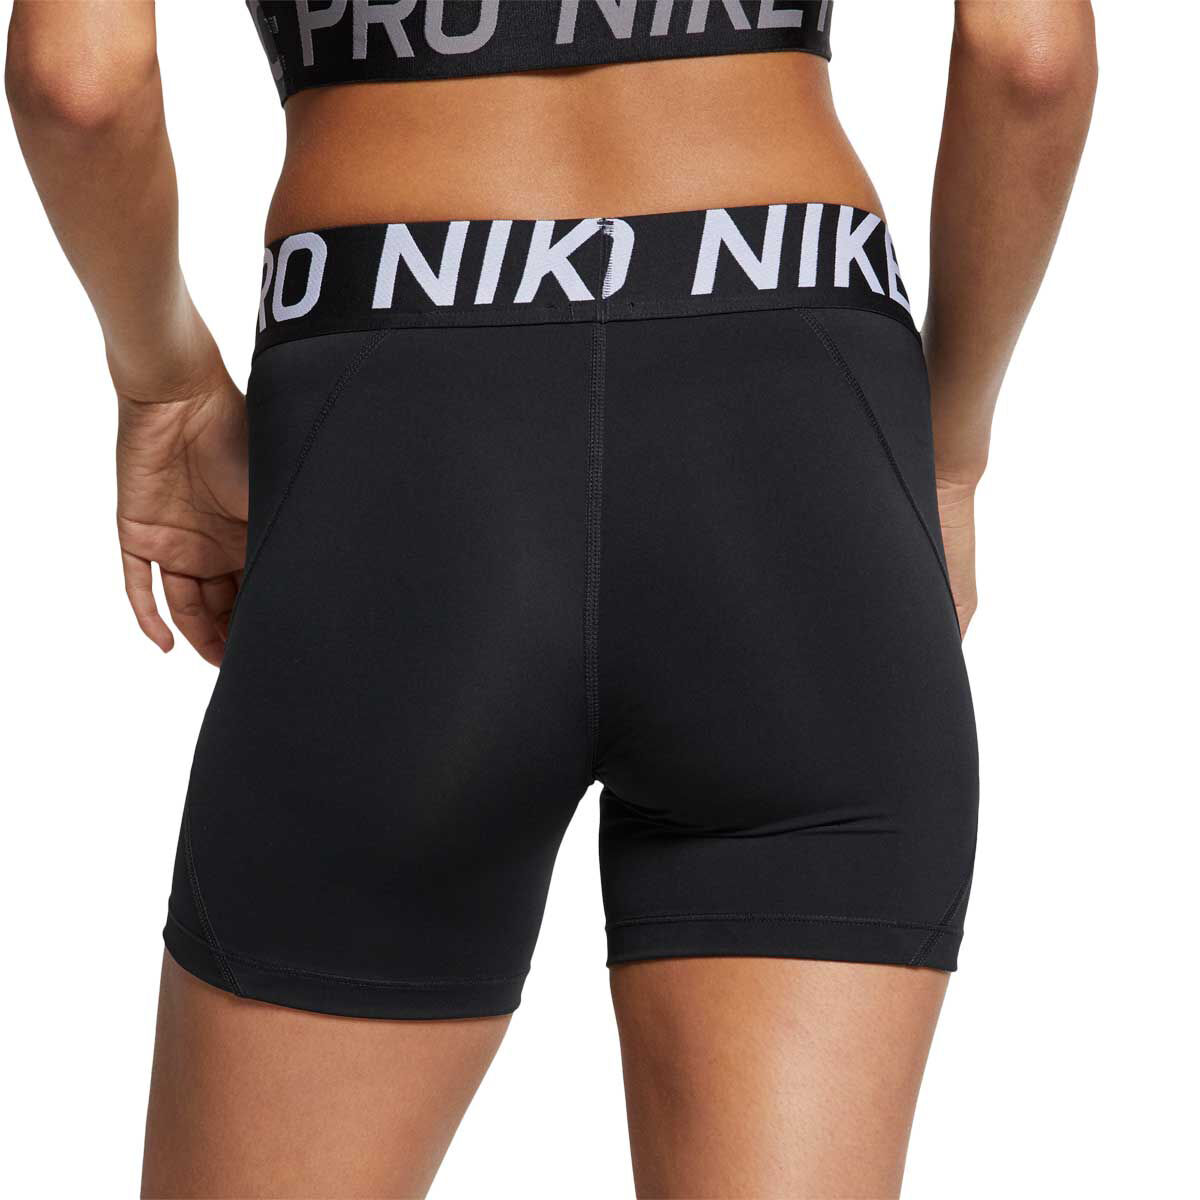 nike shorts women's 5 inch